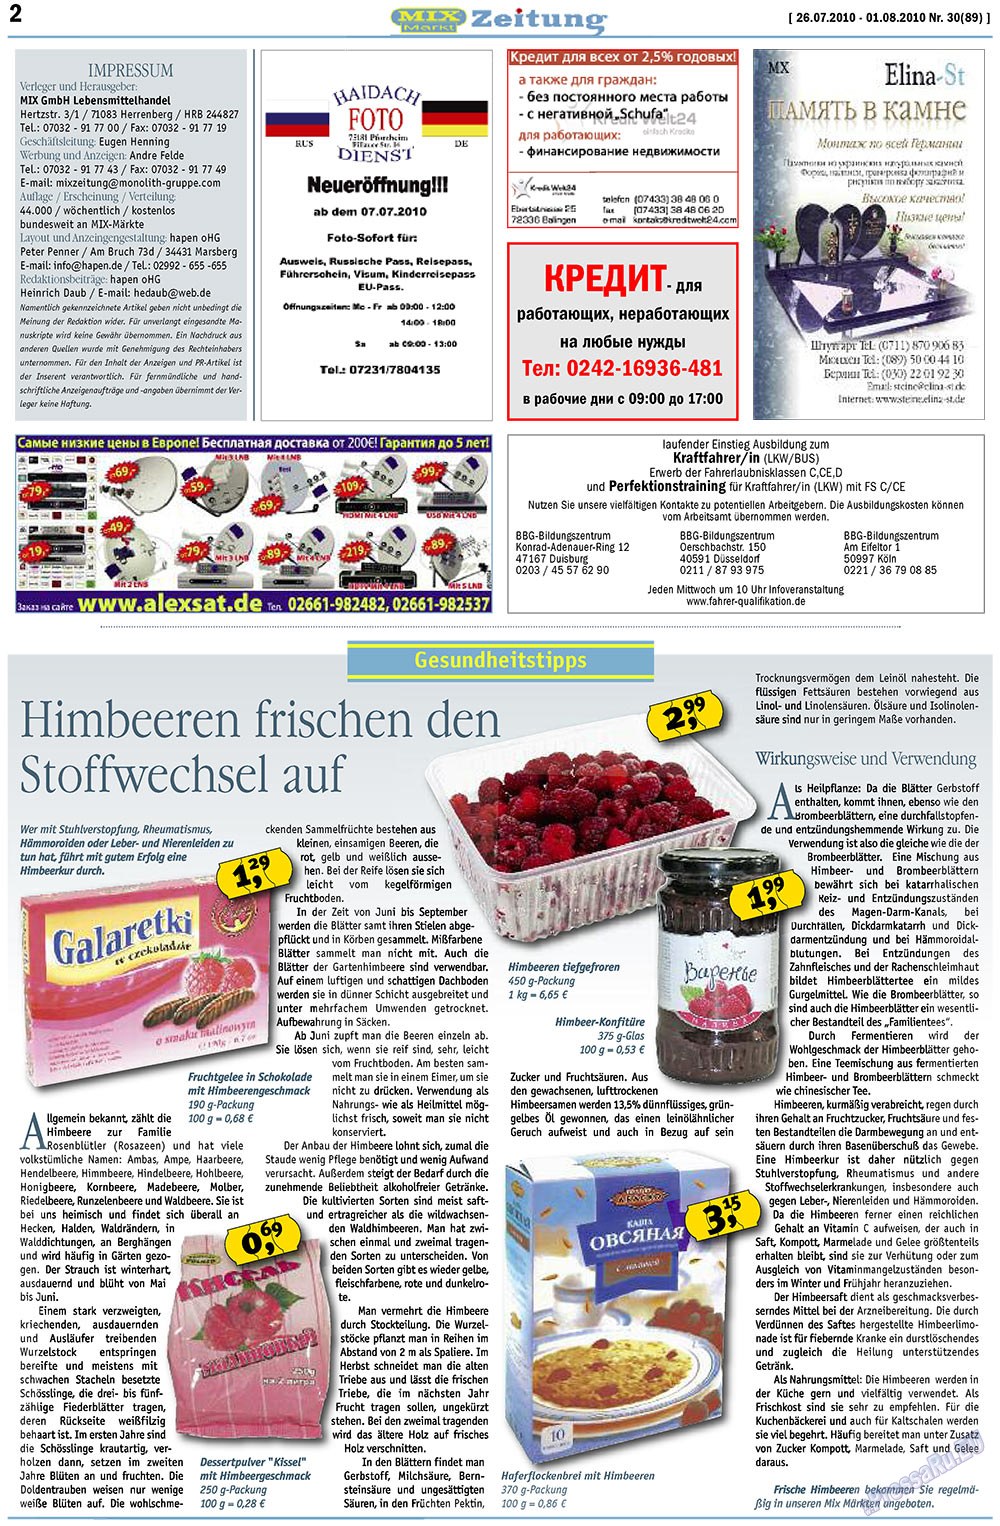 MIX-Markt Zeitung (газета). 2010 год, номер 30, стр. 2